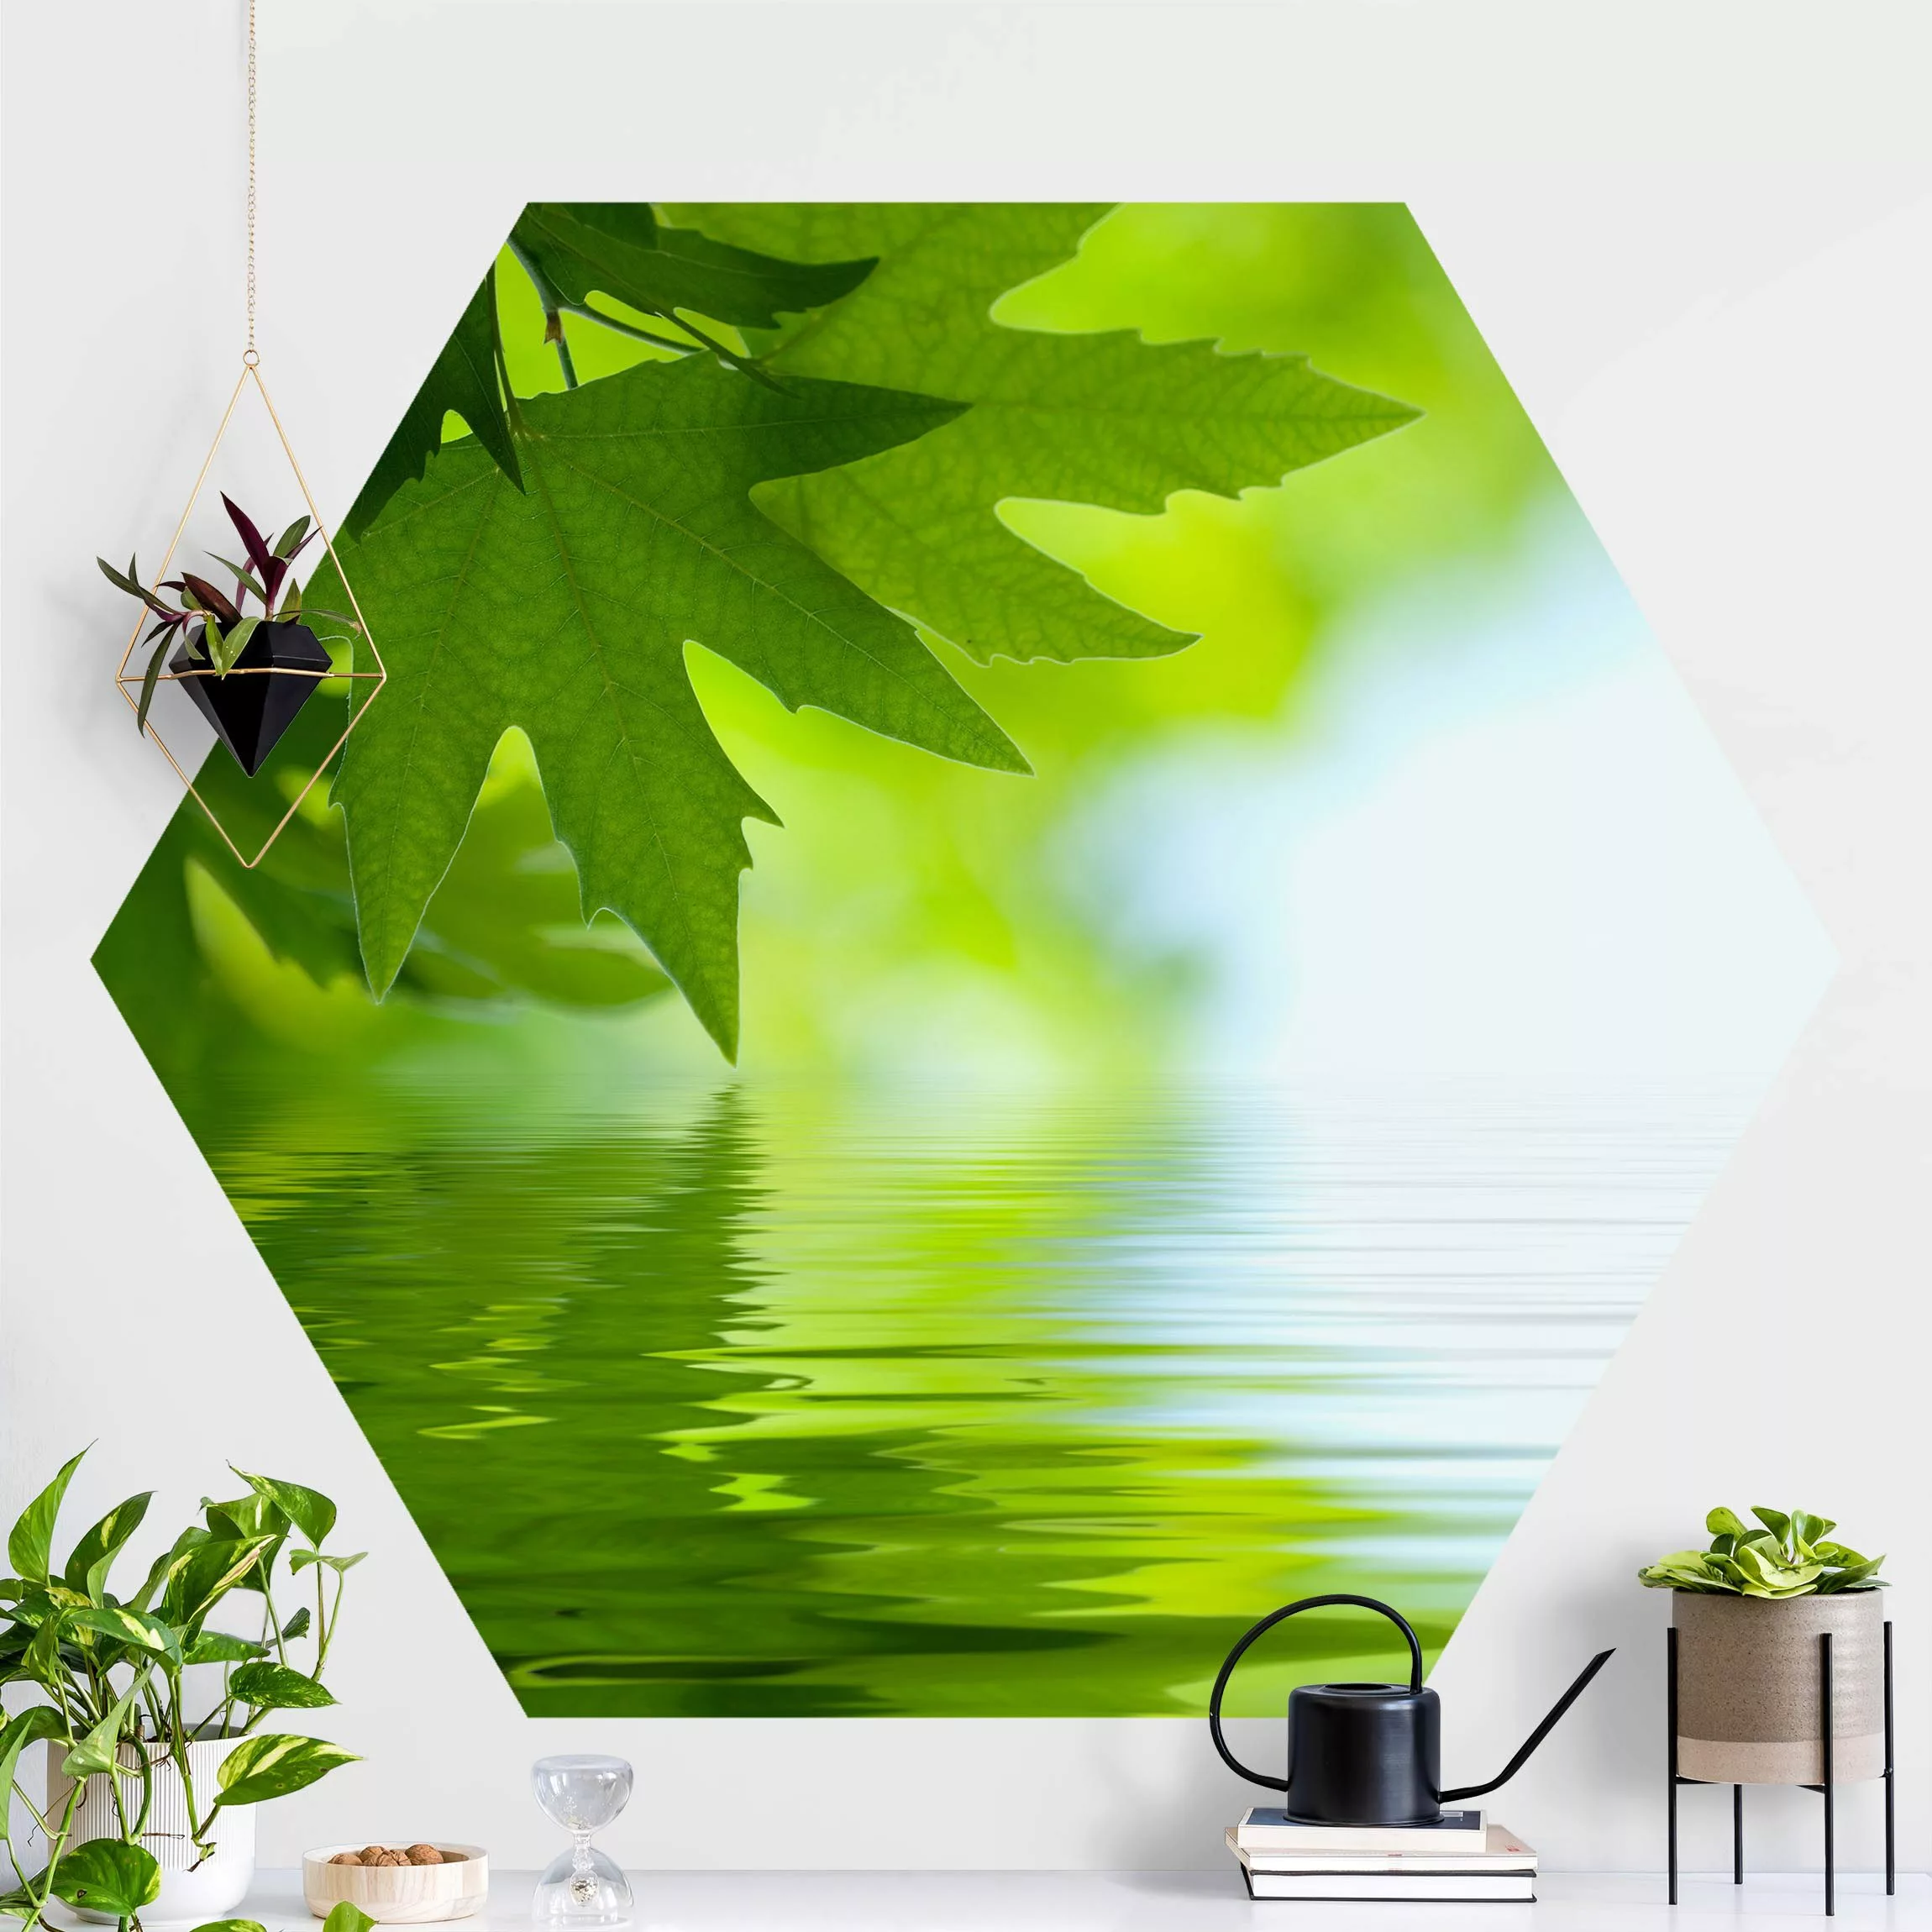 Hexagon Fototapete selbstklebend Green Ambiance III günstig online kaufen